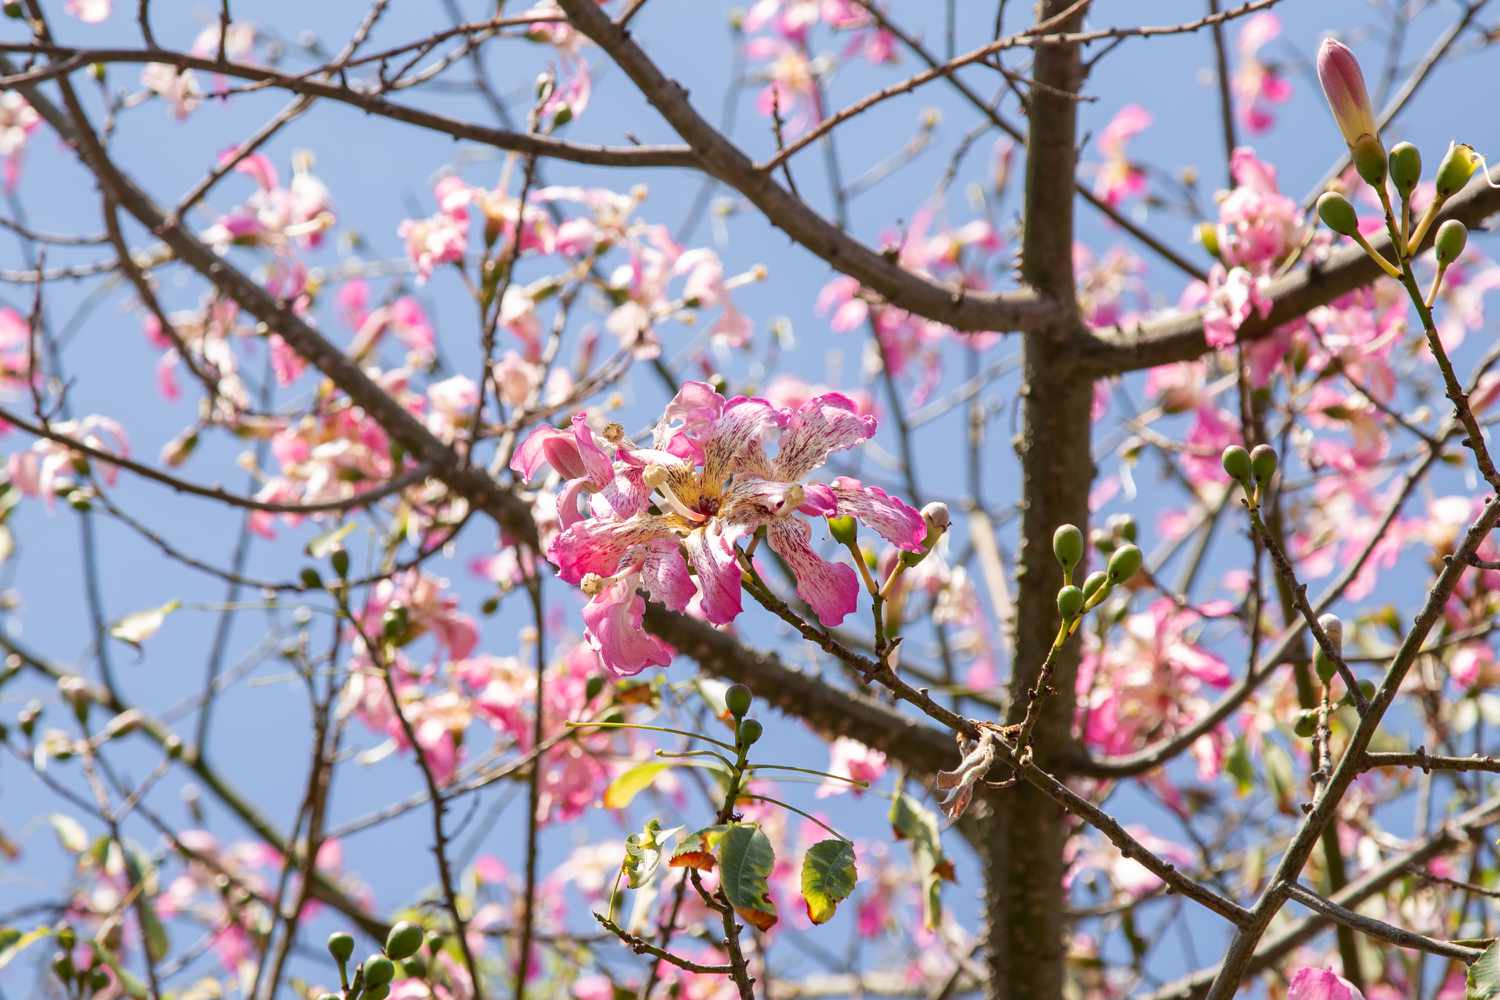 Seidenraupenbaum mit rosa und weißen Blüten und Samenkapseln an kahlen Ästen